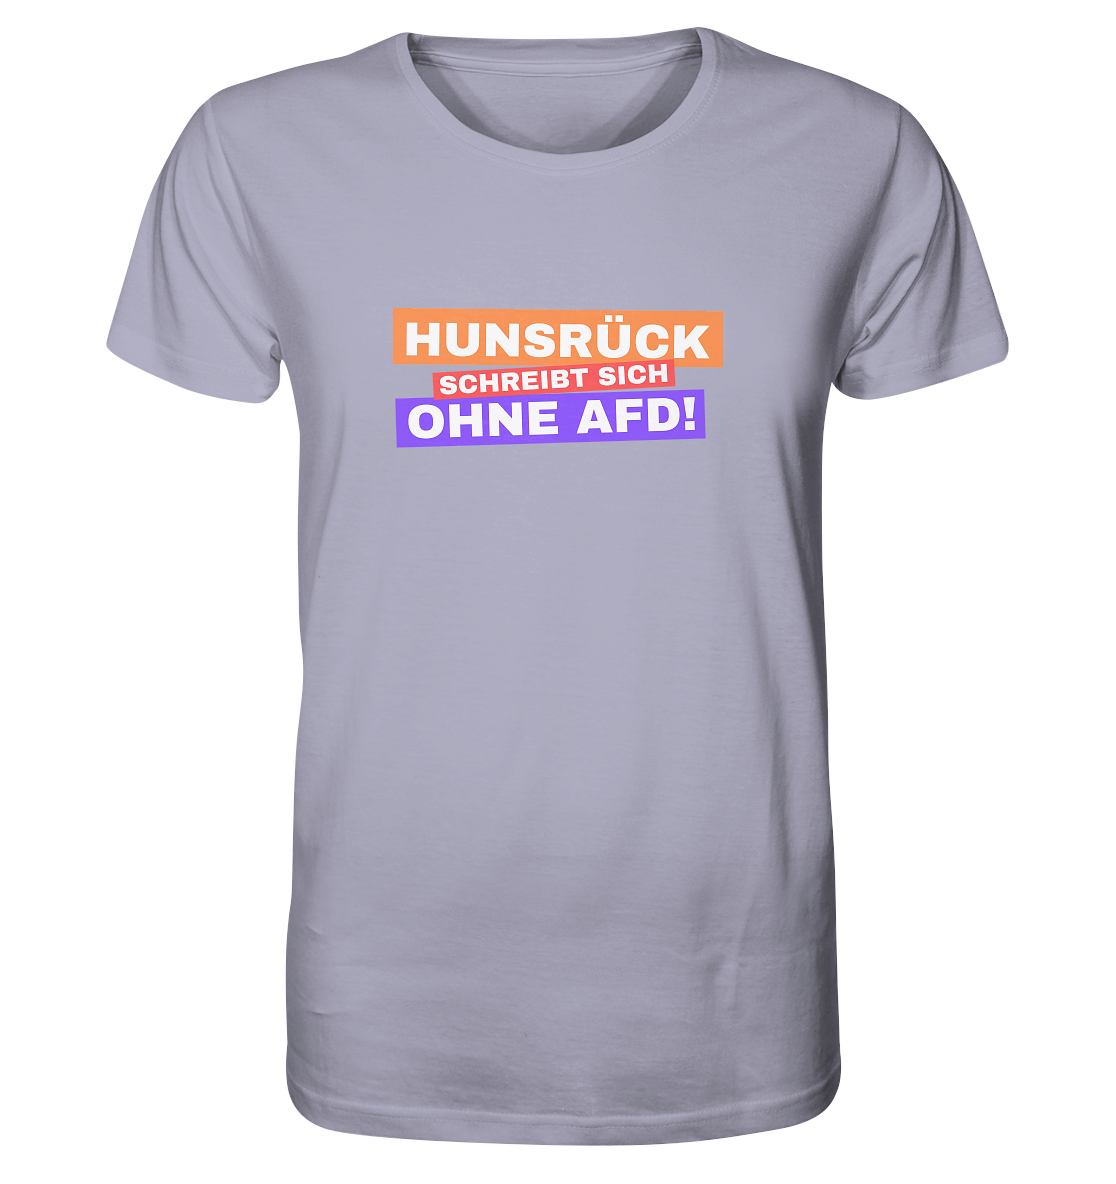 Hunsrück schreibt sich ohne AFD! - Organic Shirt